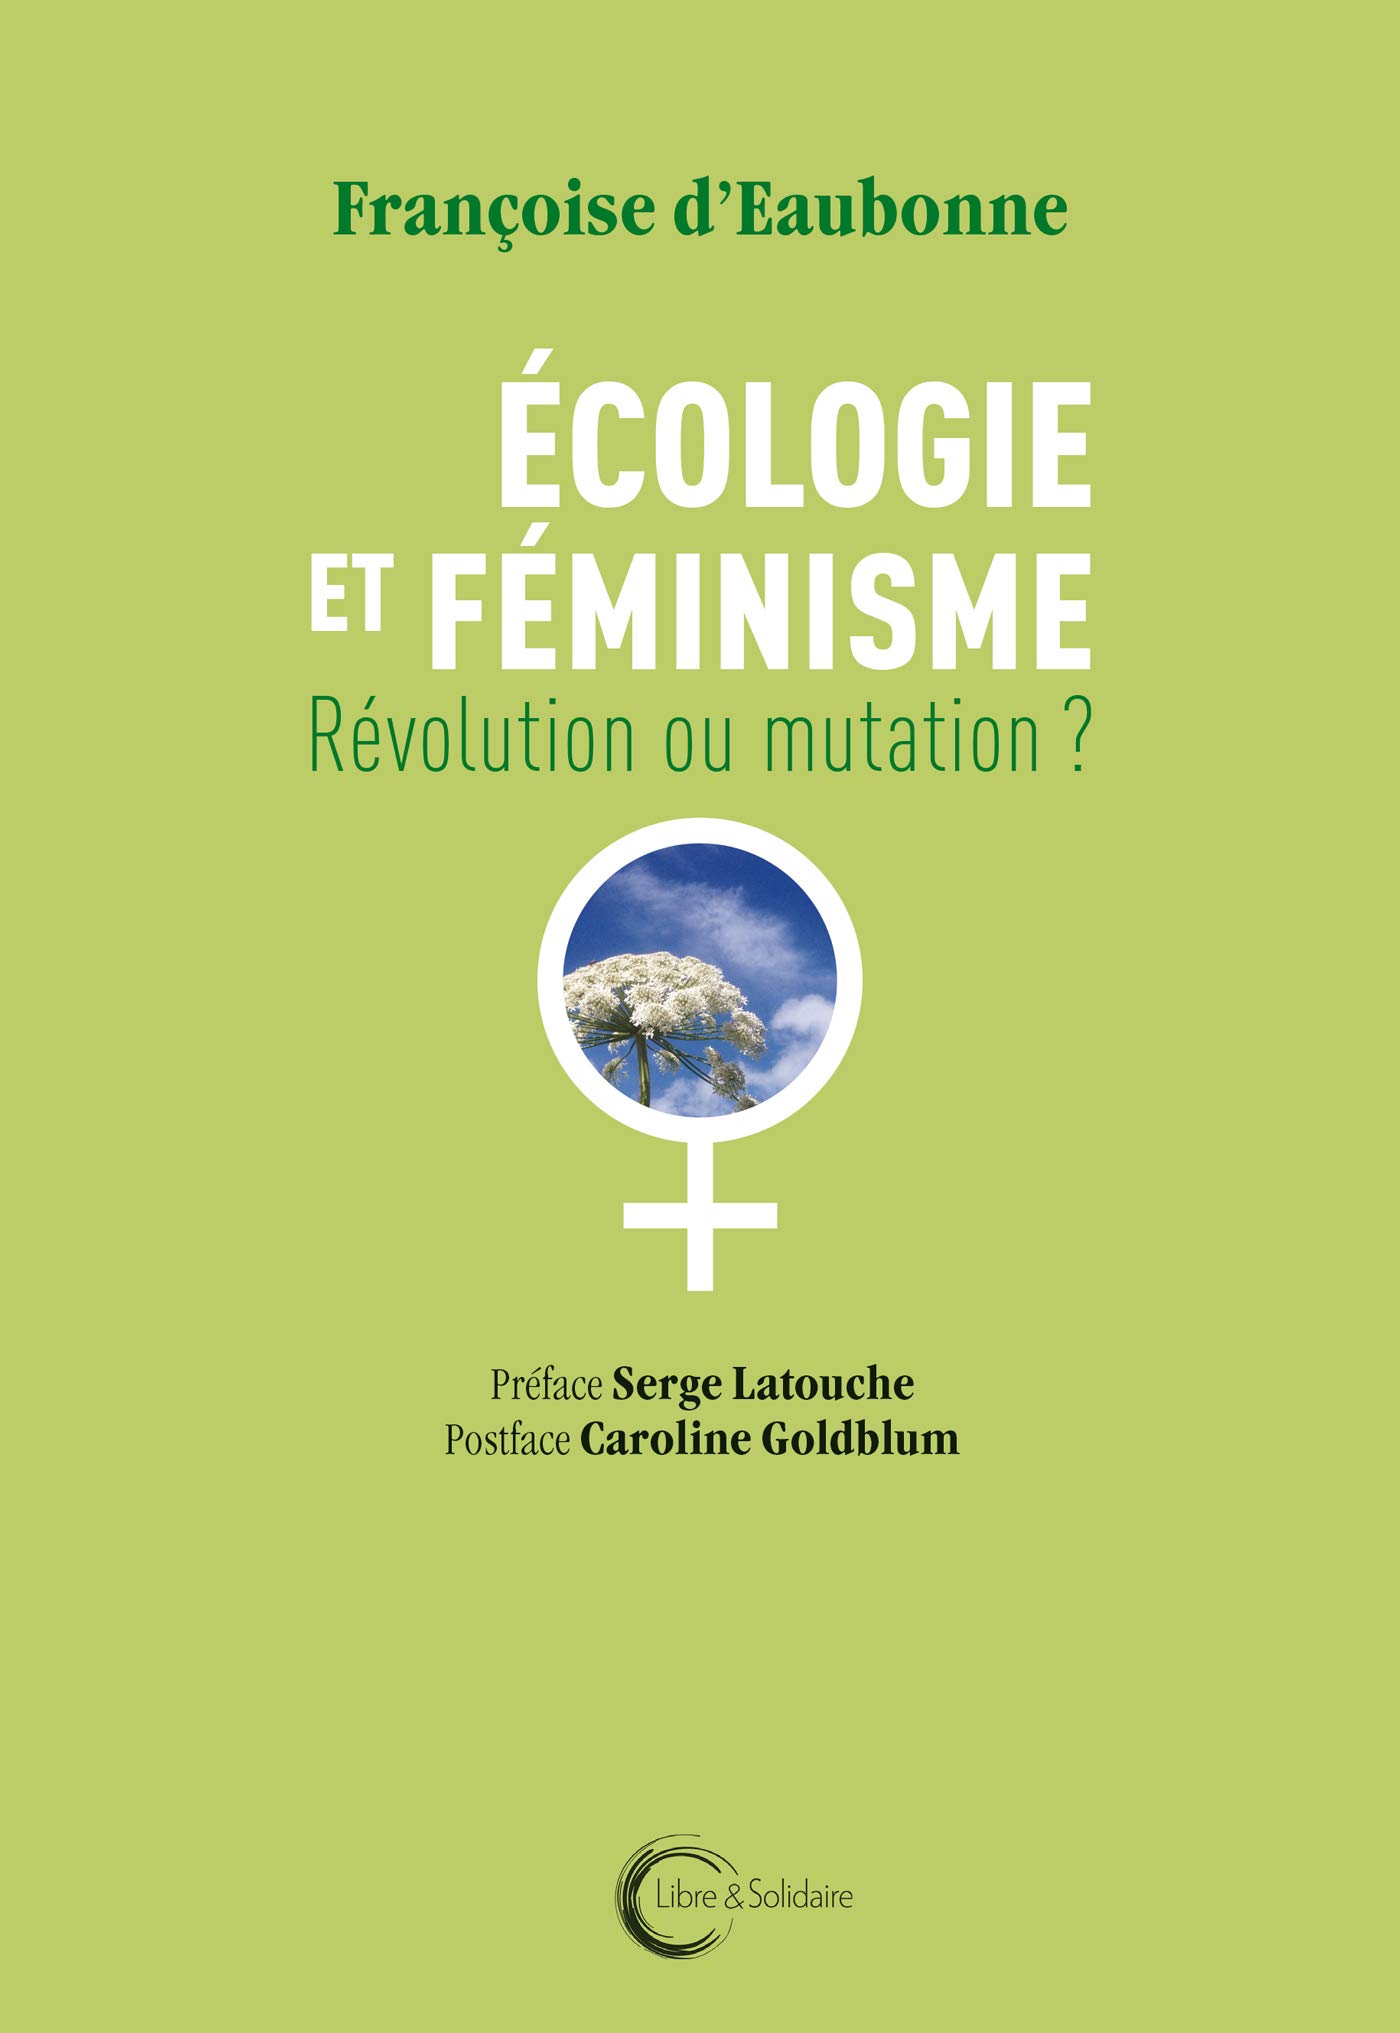 Françoise d’Eaubonne’s Ecofeminism - Books & ideas